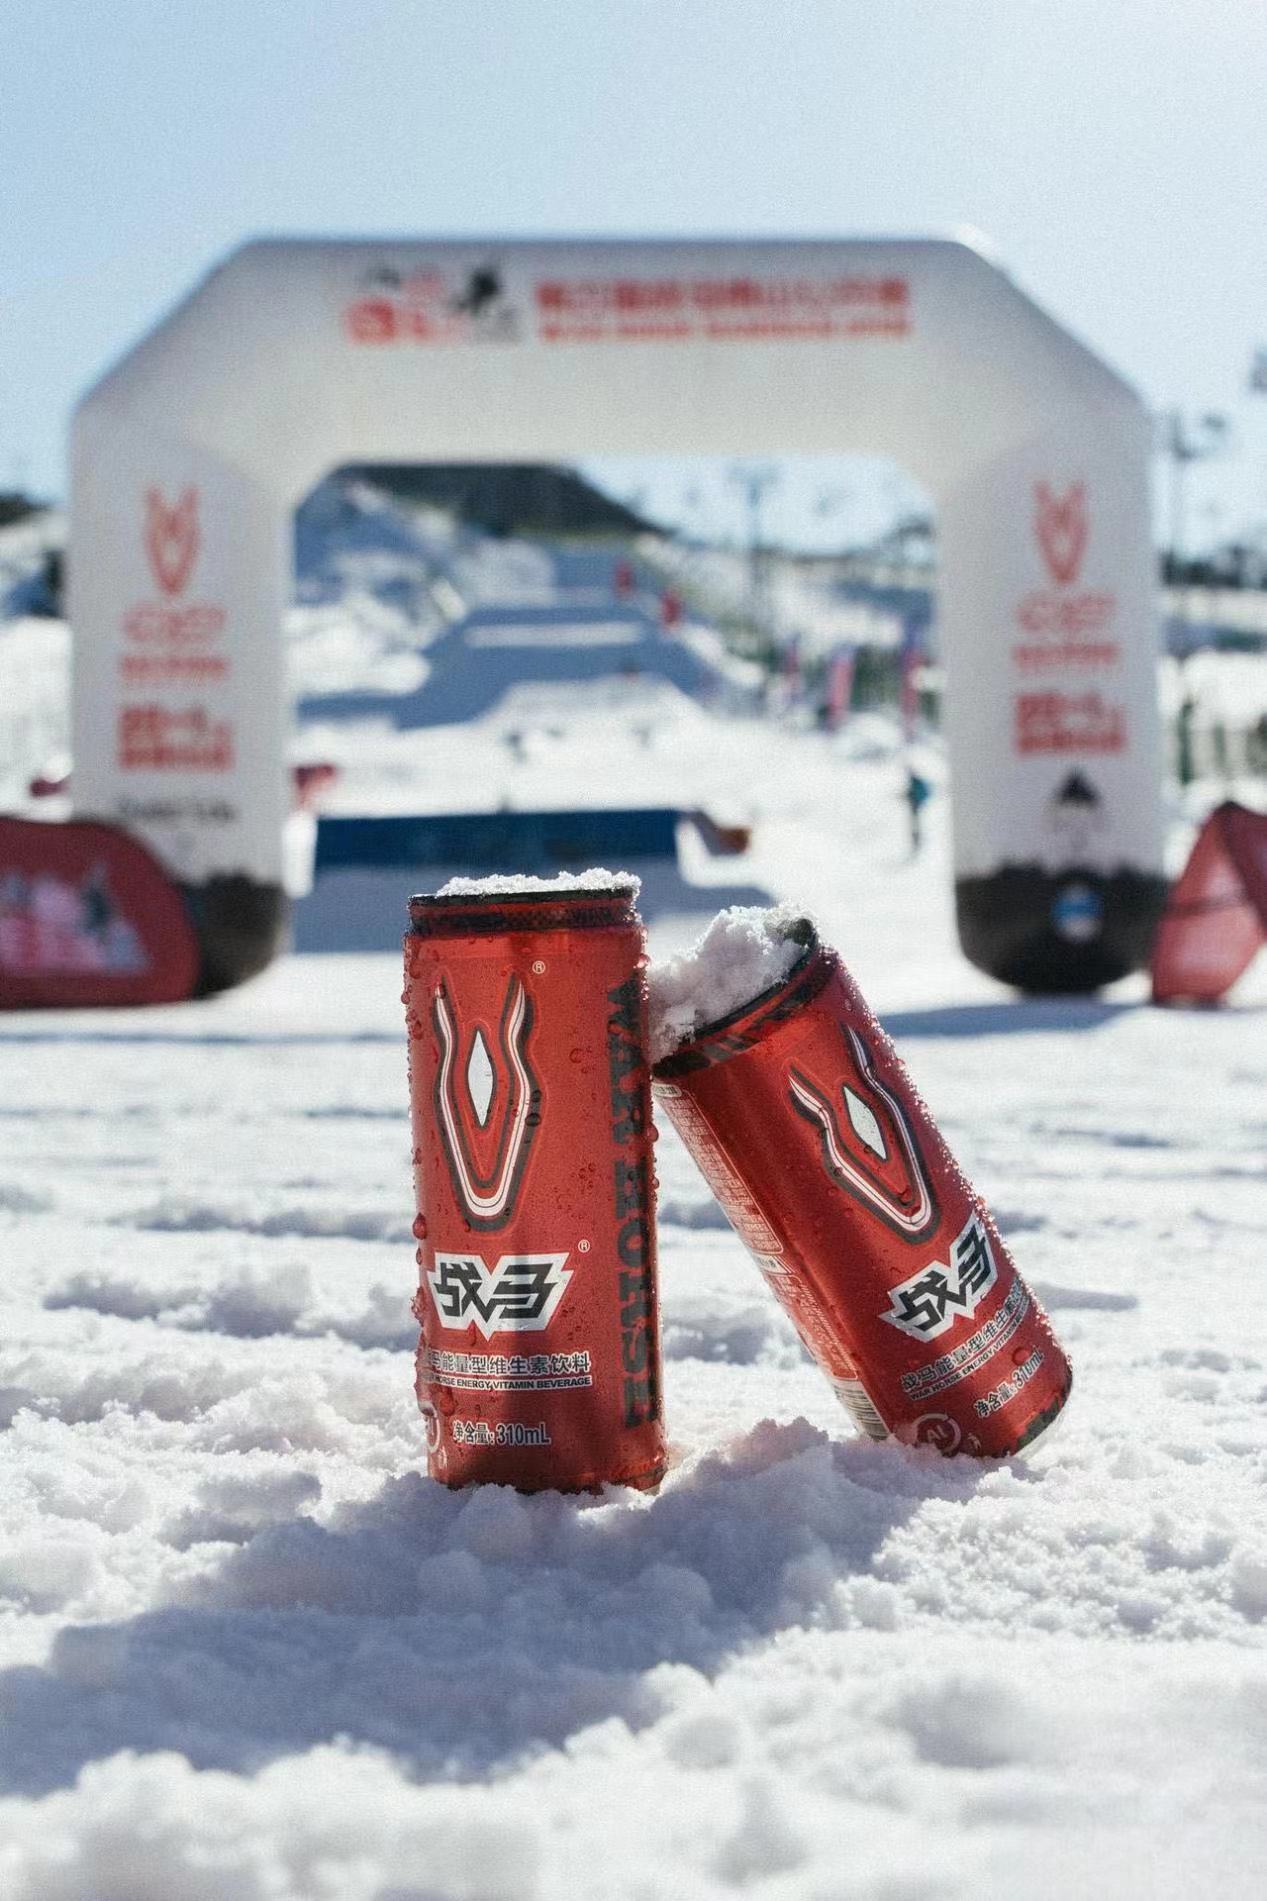 能量饮料有哪些？还不快来战马线上滑雪挑战赛